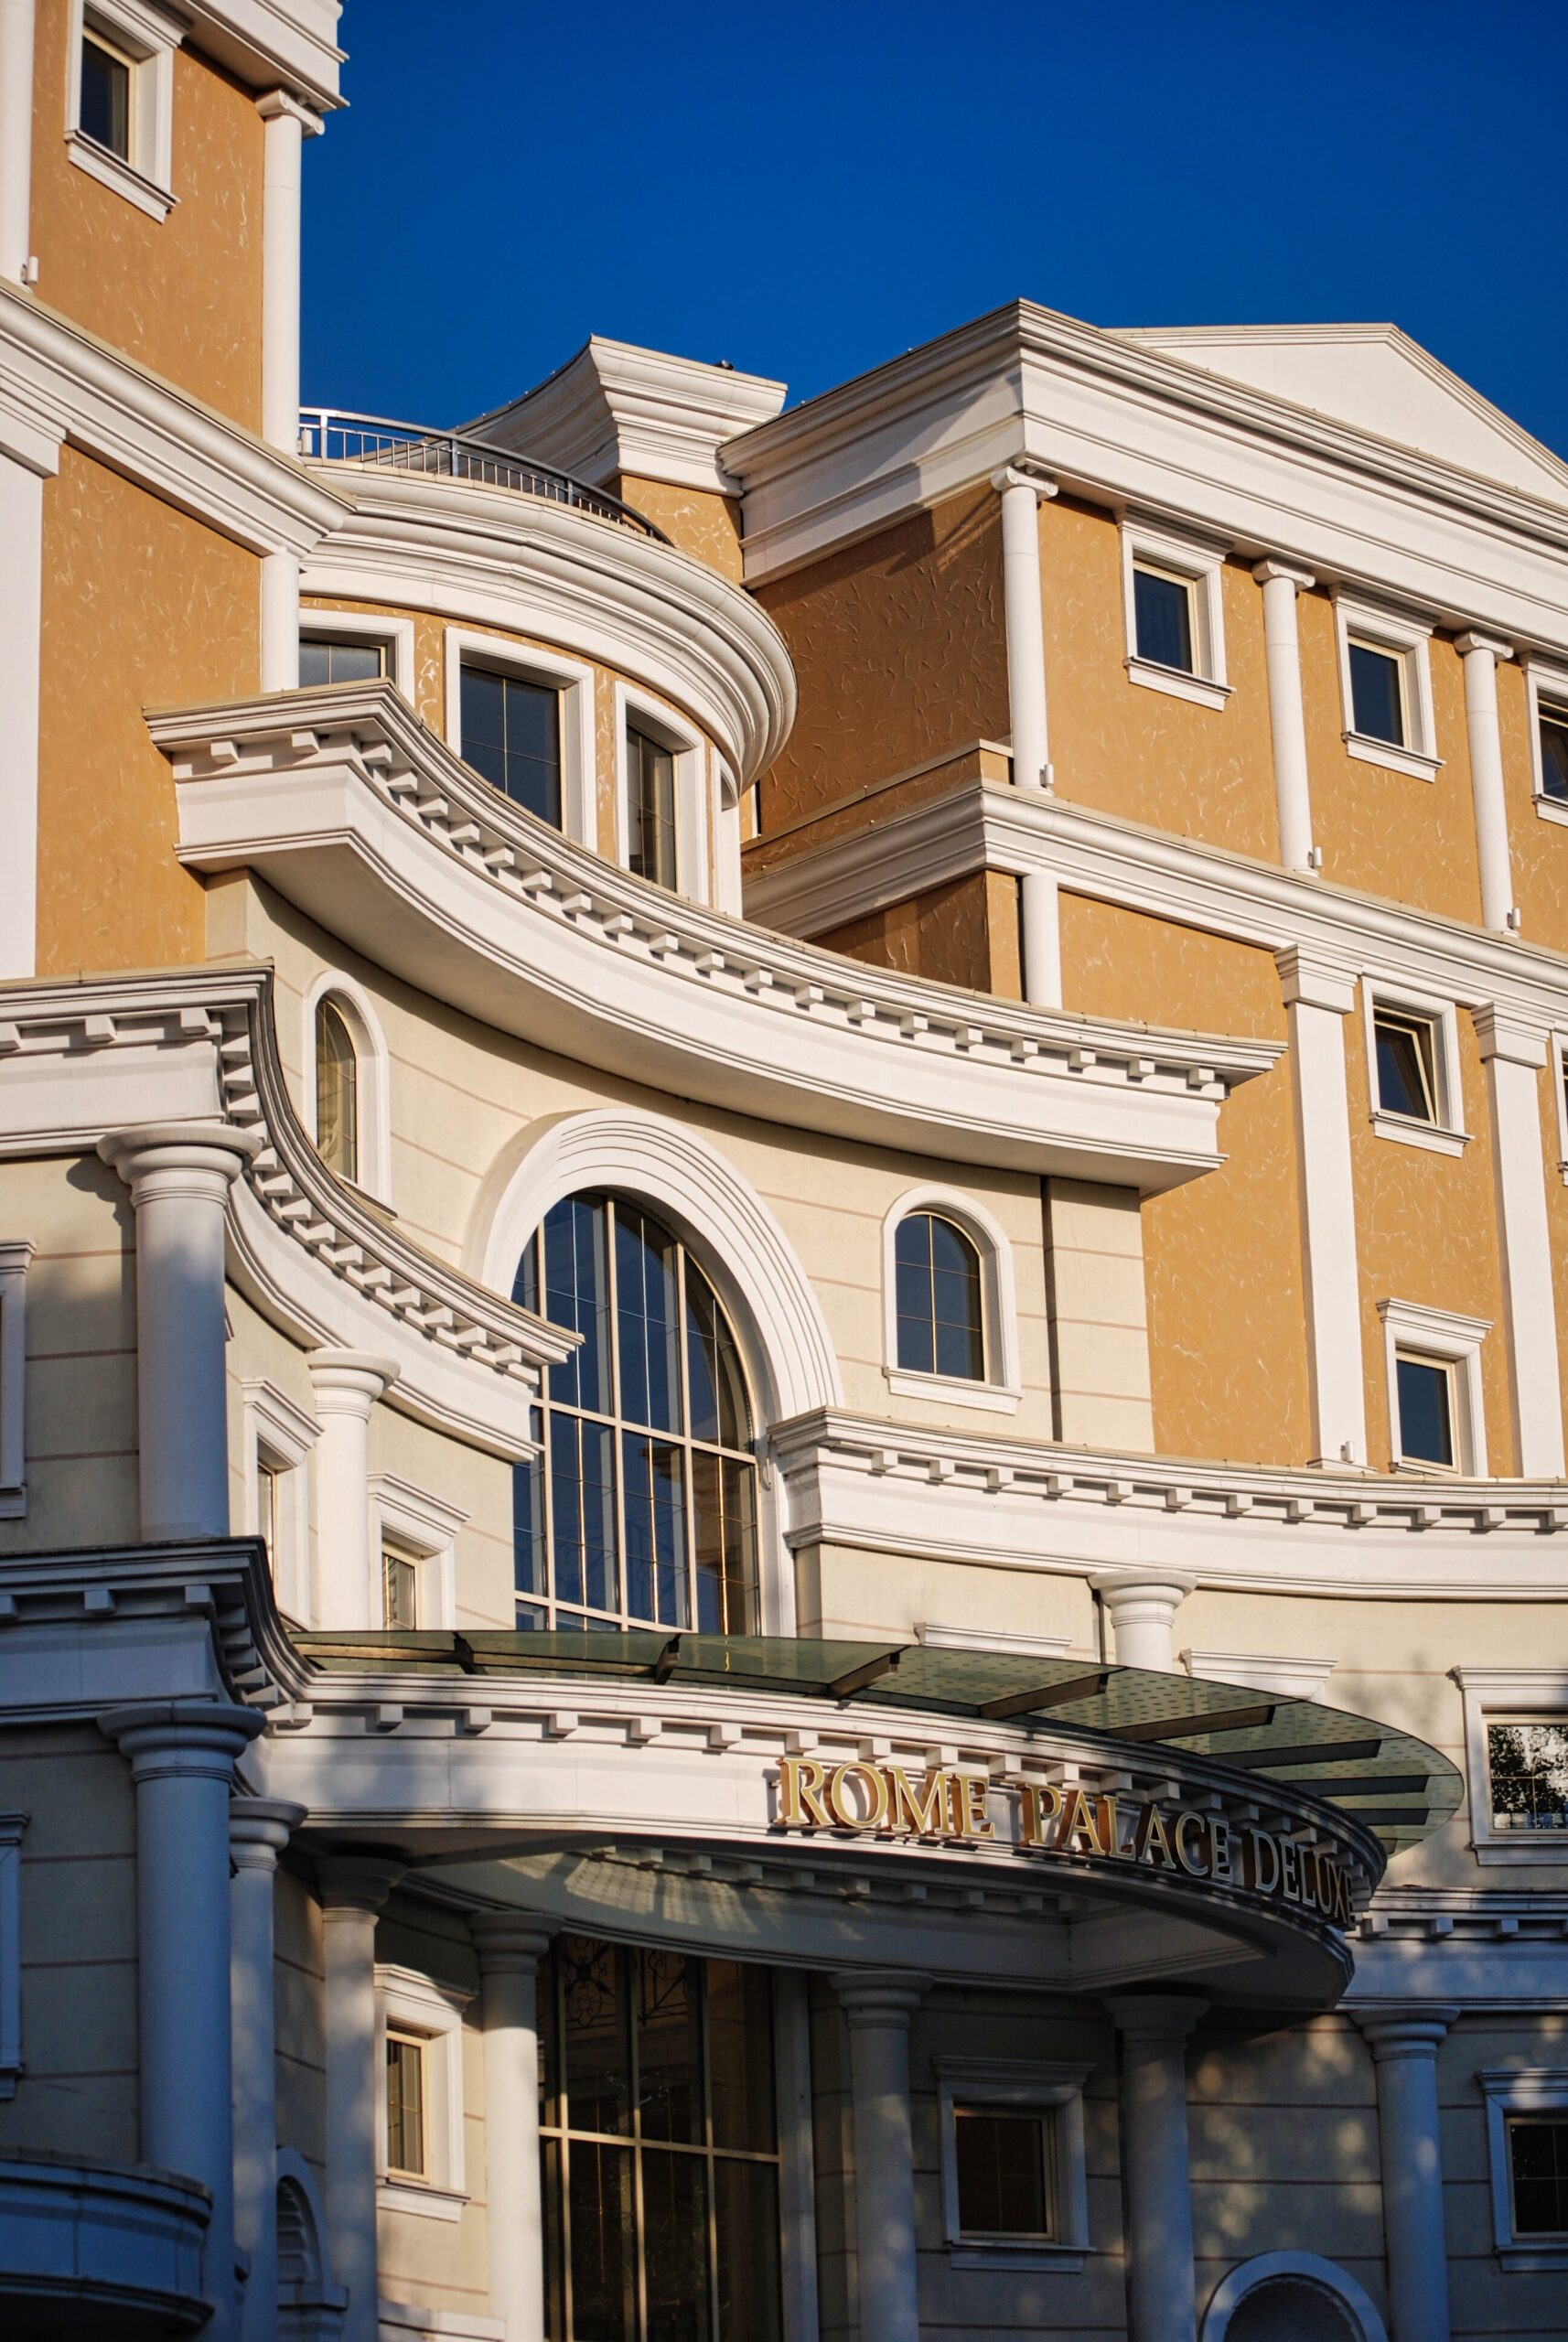 Hotel Roma Palace Deluxe w Słonecznym Brzegu podczas wyjazdu na wczasy w Bułgarii